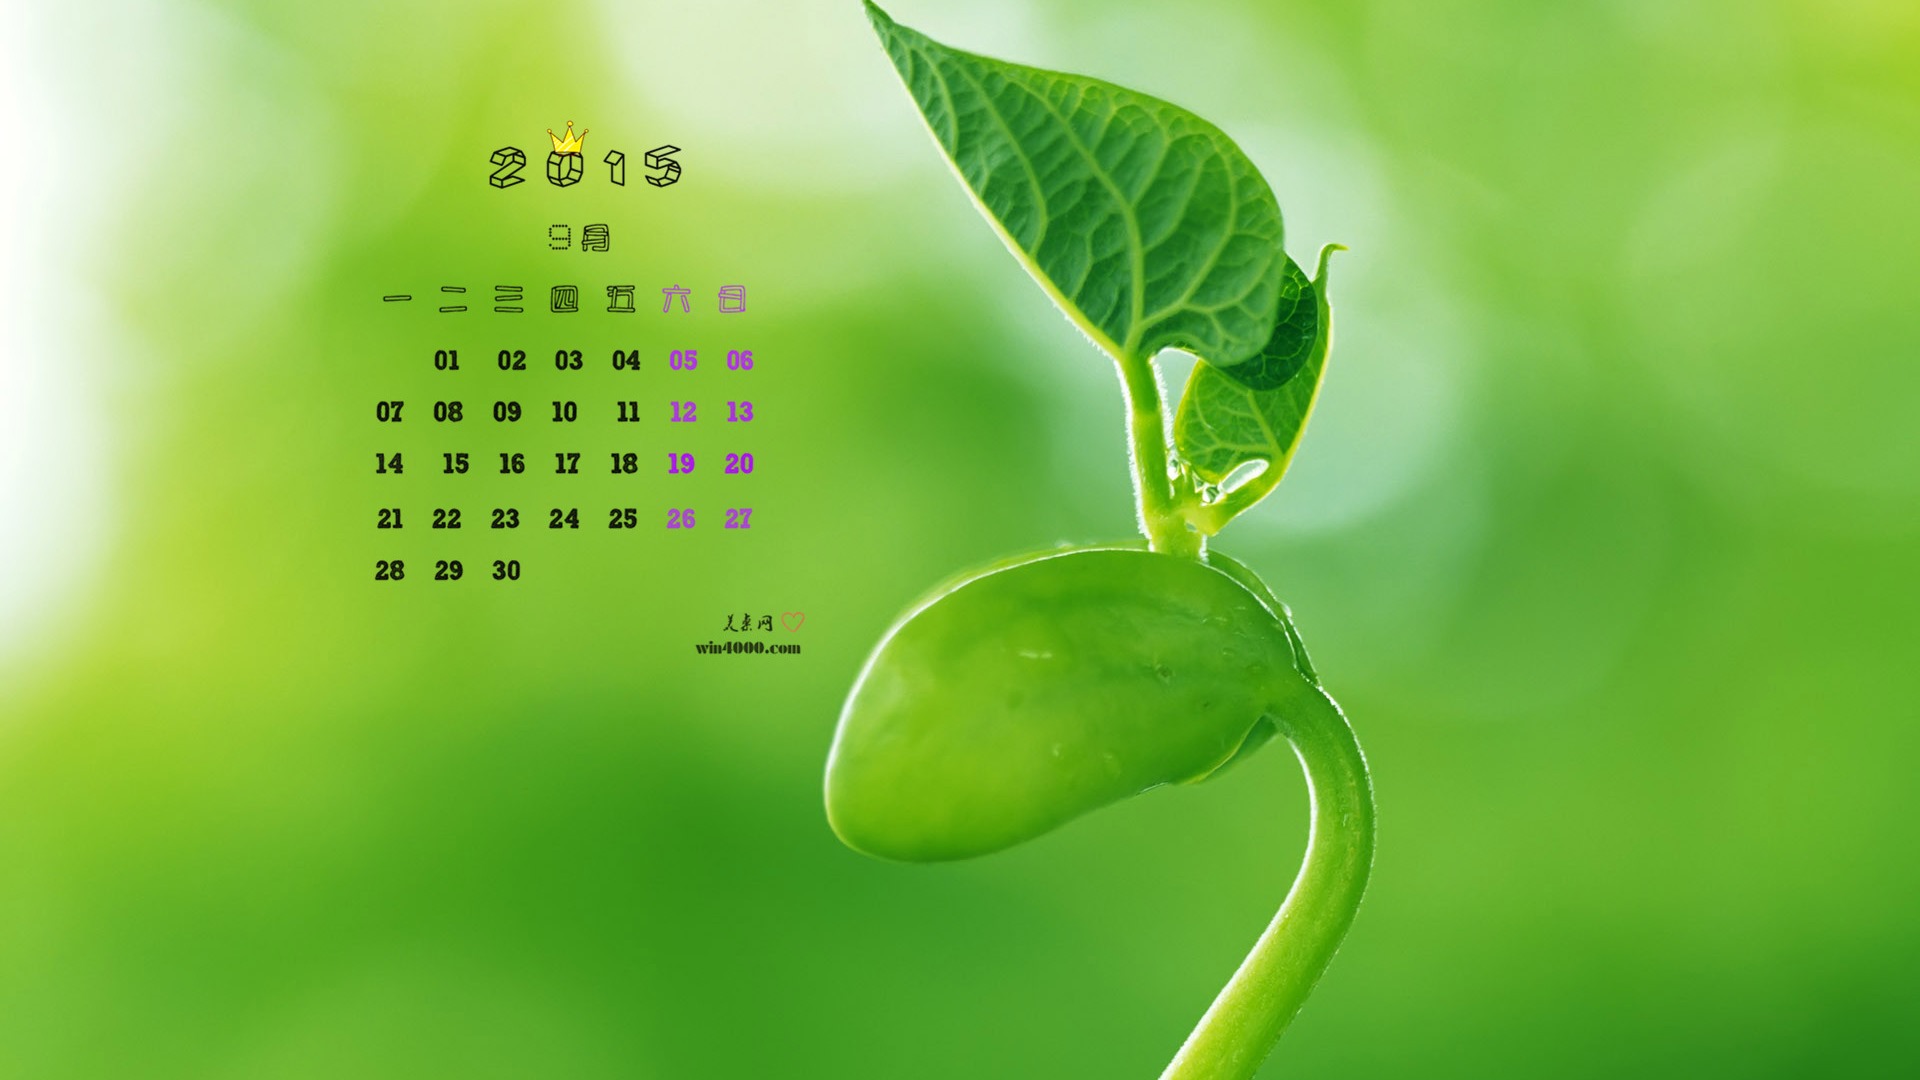 09 2015 fondos de escritorio calendario (1) #5 - 1920x1080